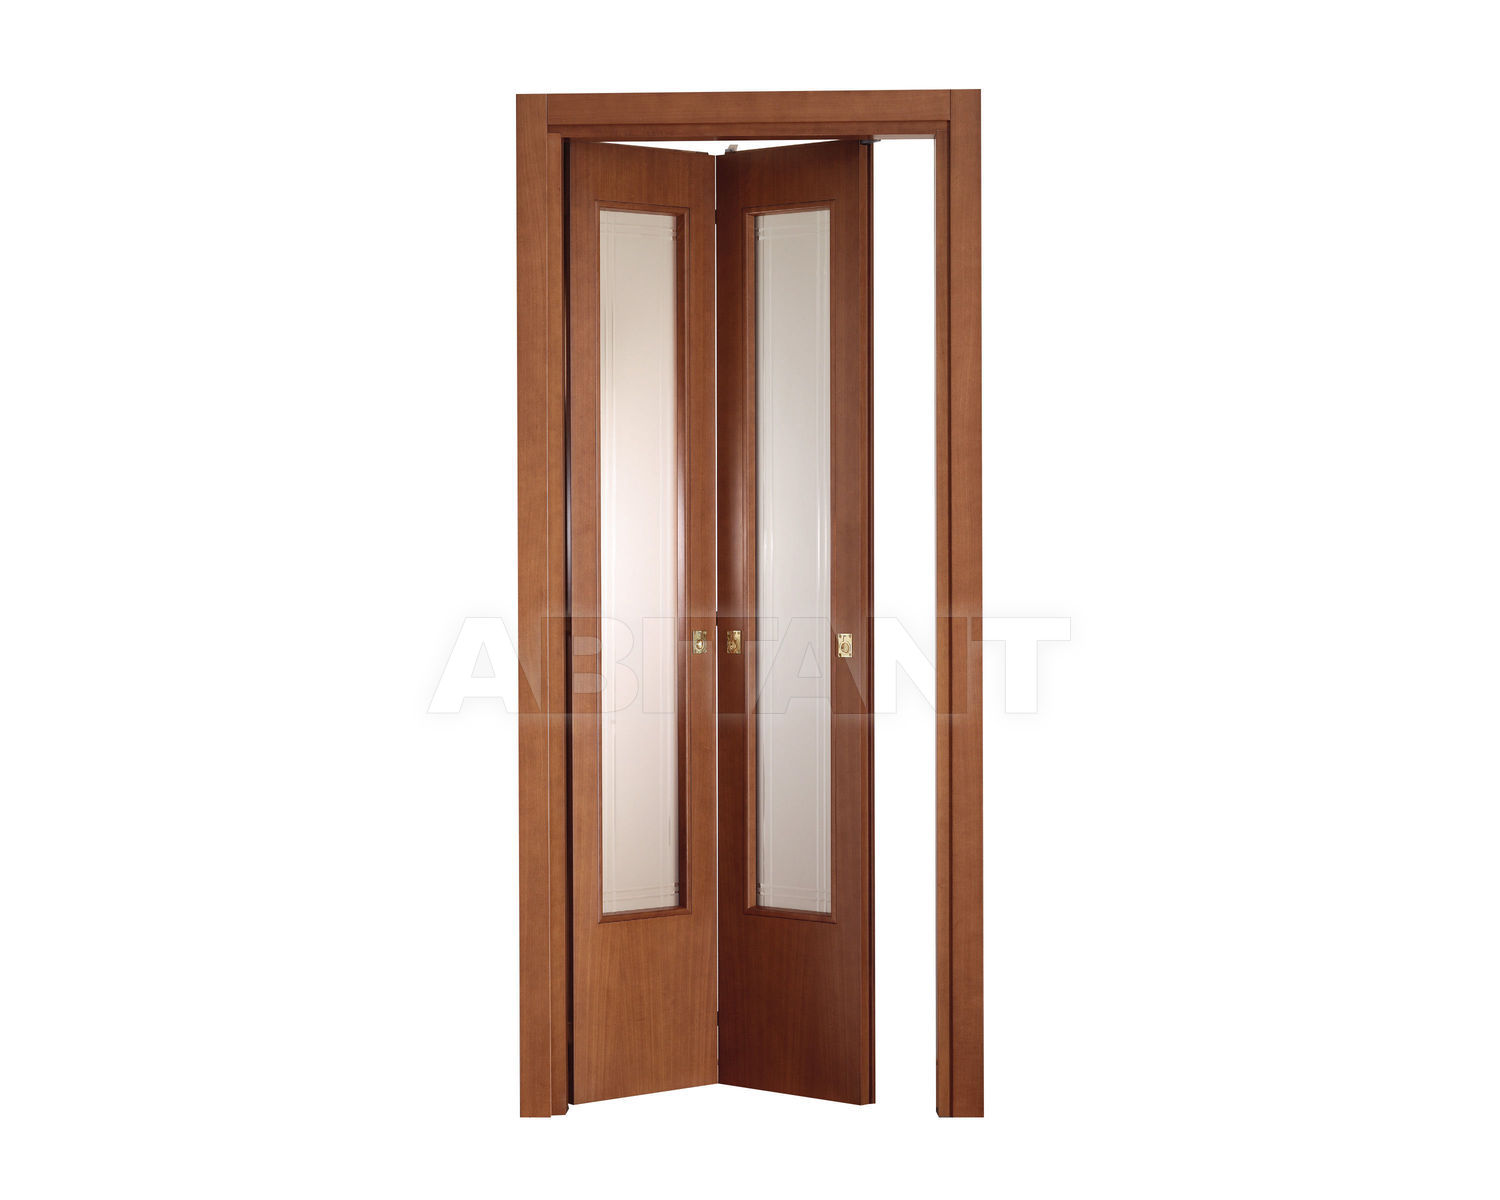 Купить Дверь деревянная Geronazzo F.lli snc Porte 10/ V Noce Tanganica